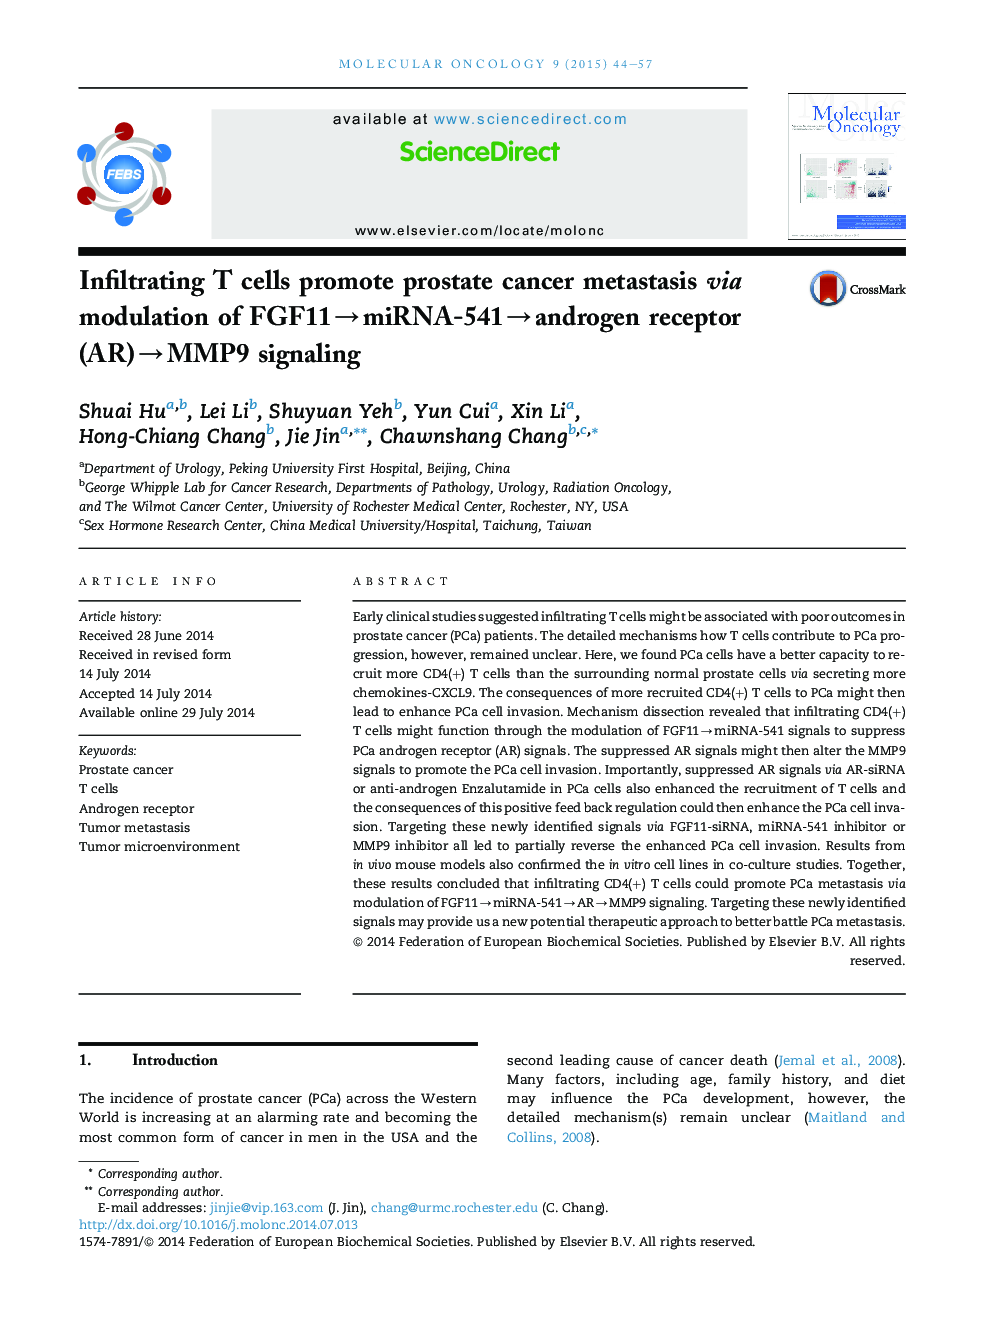 Infiltrating T cells promote prostate cancer metastasis via modulation of FGF11âmiRNA-541âandrogen receptor (AR)âMMP9 signaling